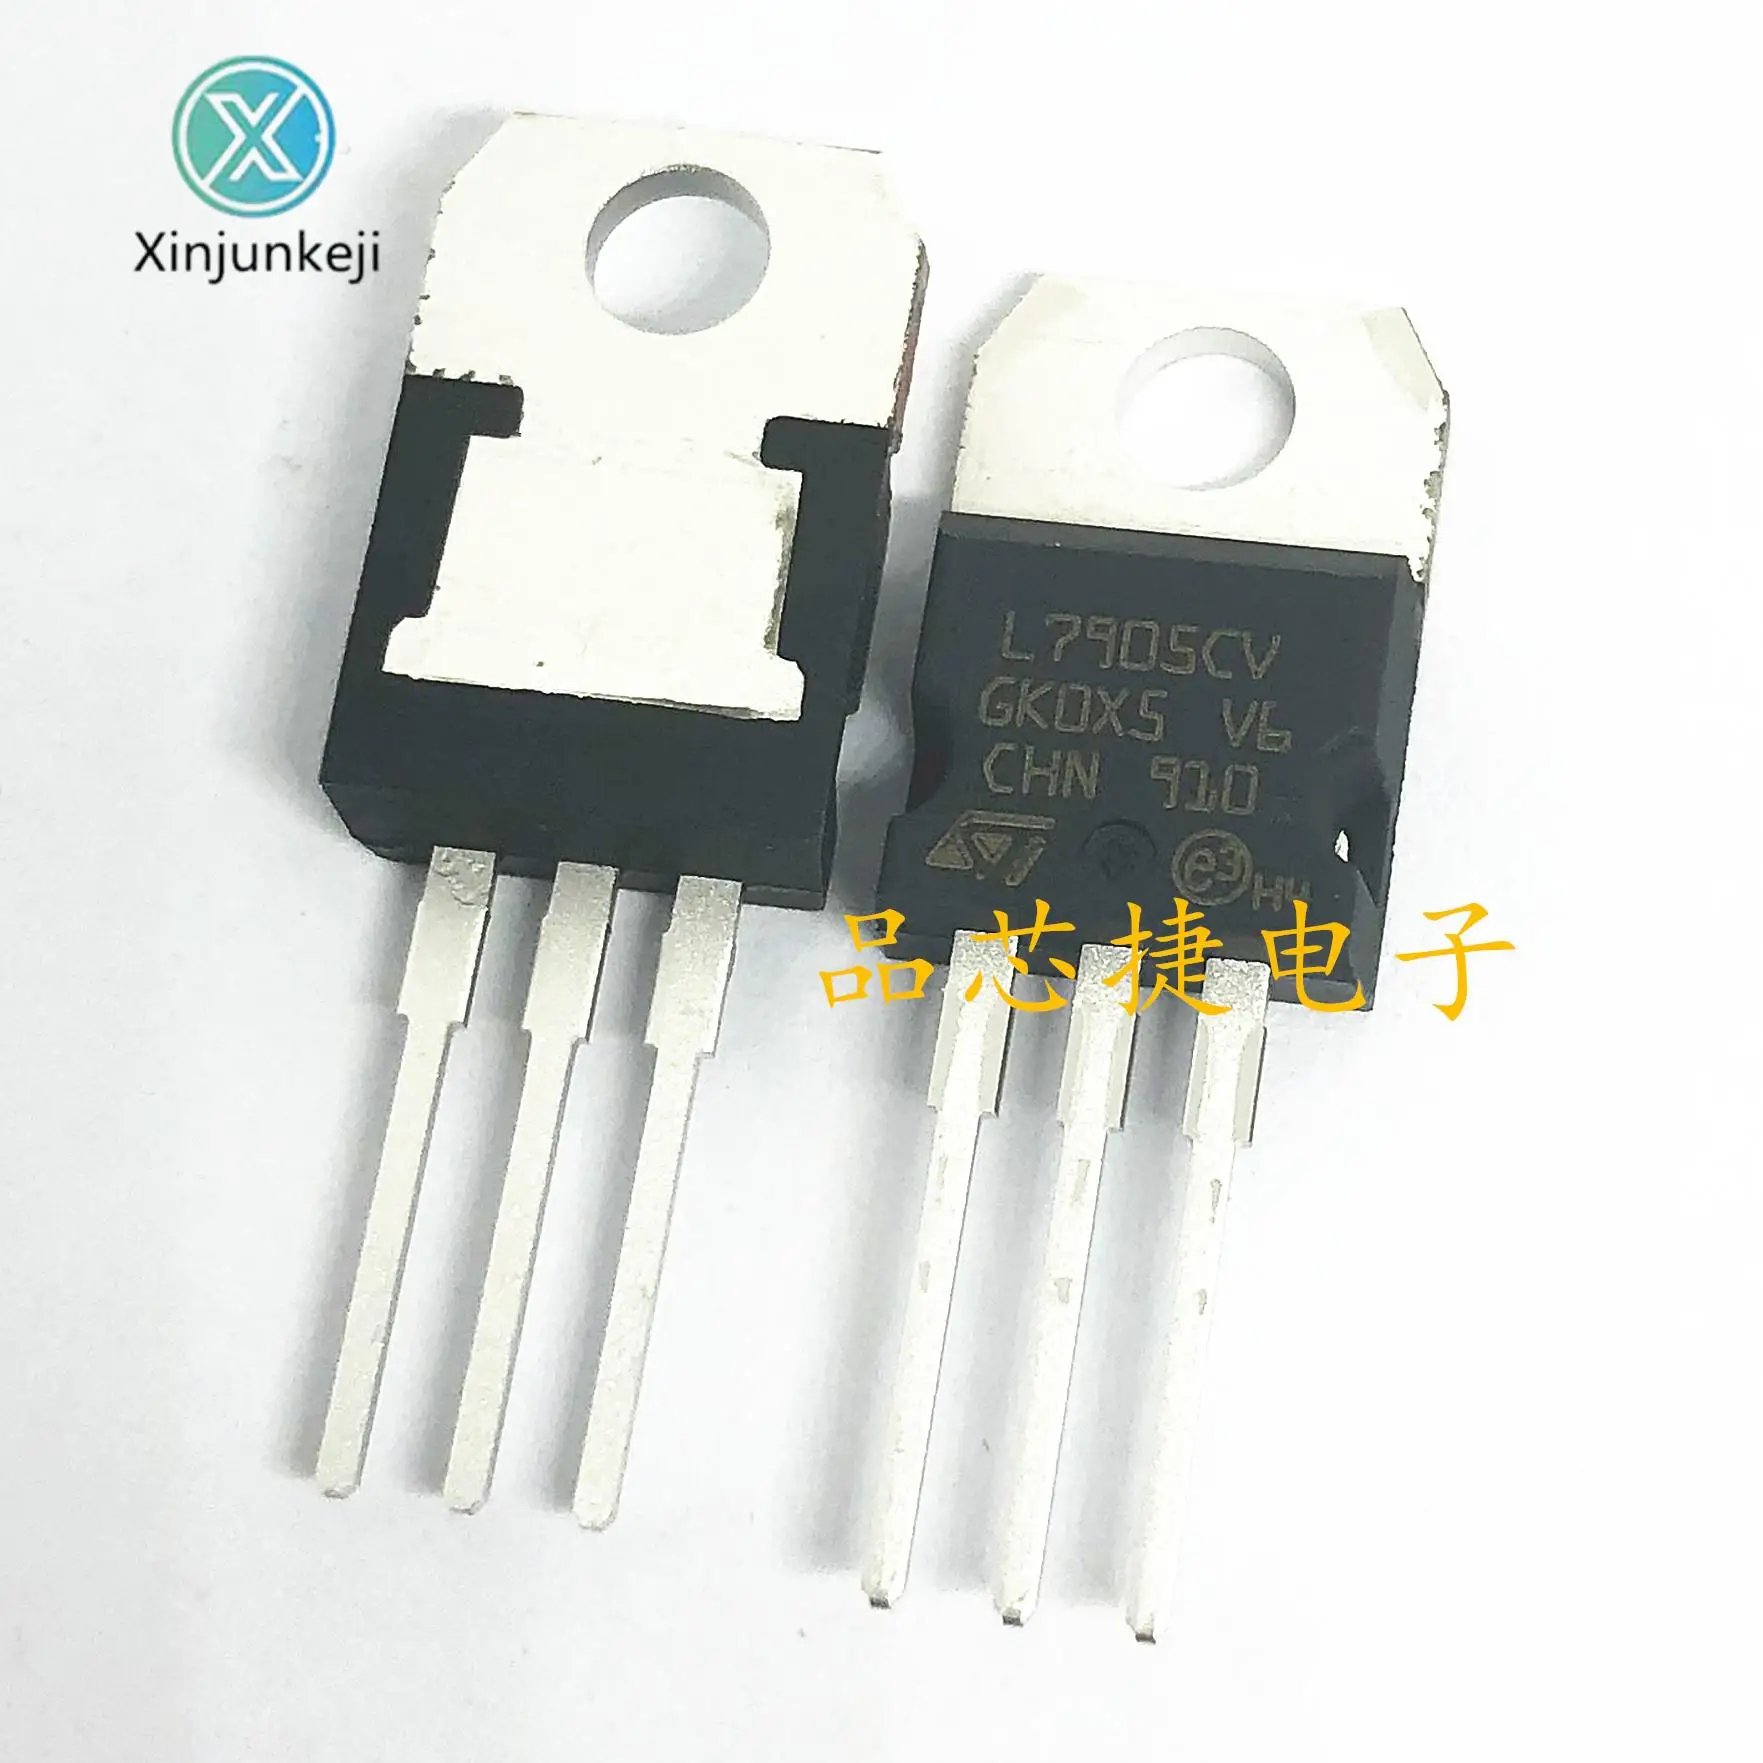 

10pcs orginal new L7905CVDG L7905CV 7905 TO220 5V 1.5A three terminal voltage regulator IC